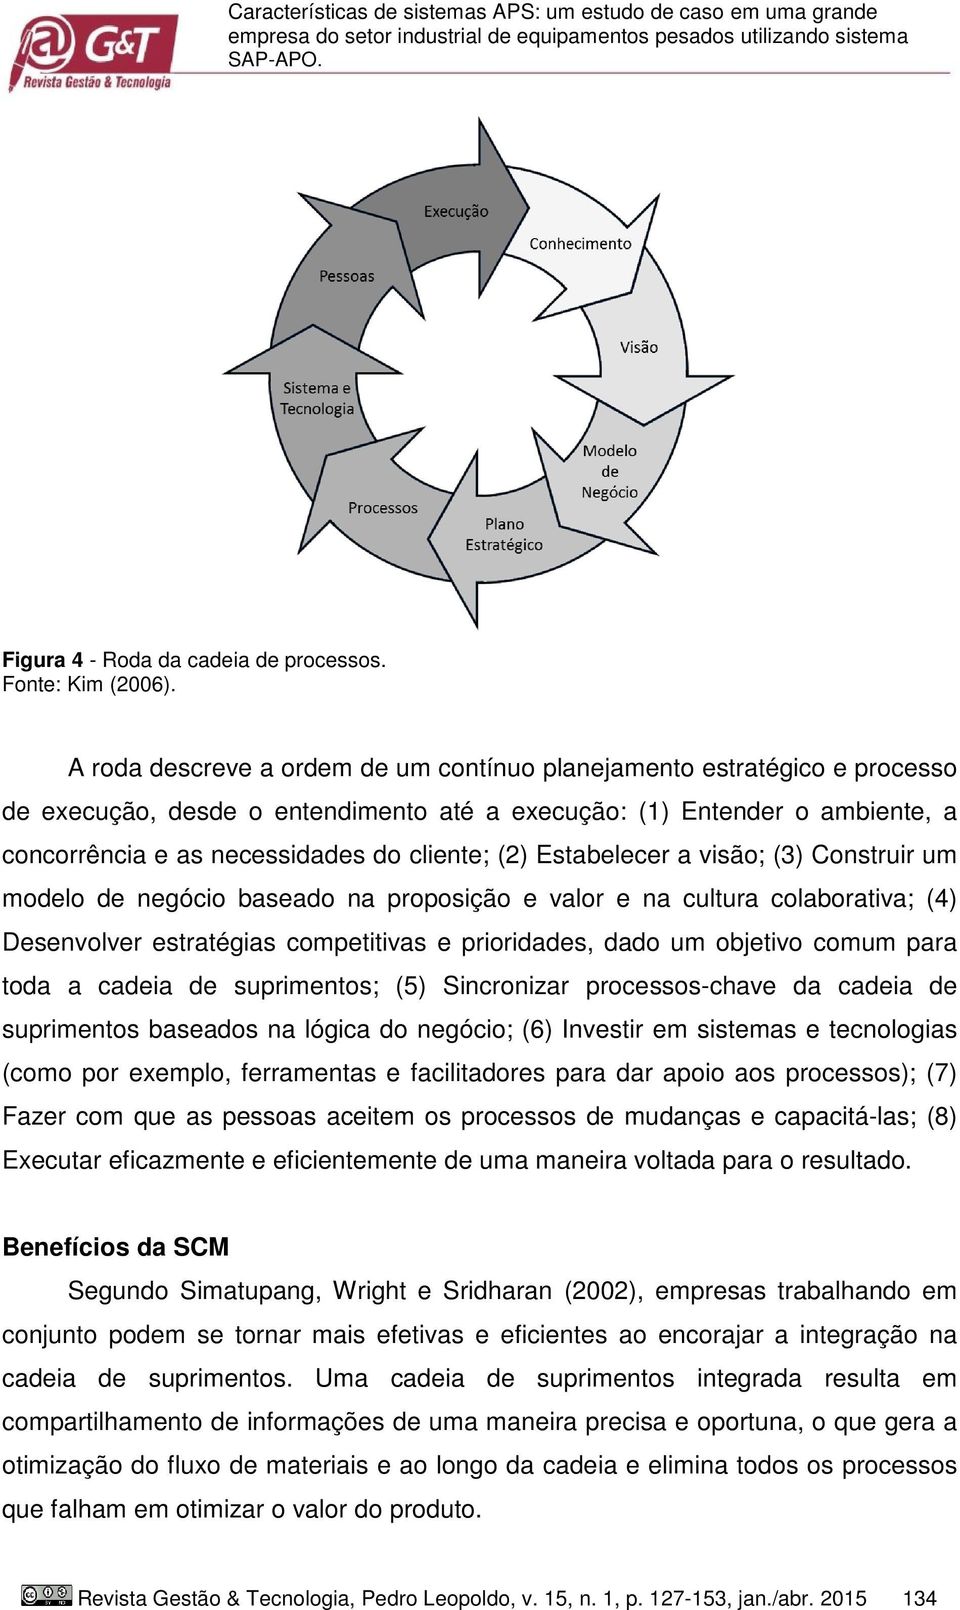 A roda descreve a ordem de um contínuo planejamento estratégico e processo de execução, desde o entendimento até a execução: (1) Entender o ambiente, a concorrência e as necessidades do cliente; (2)